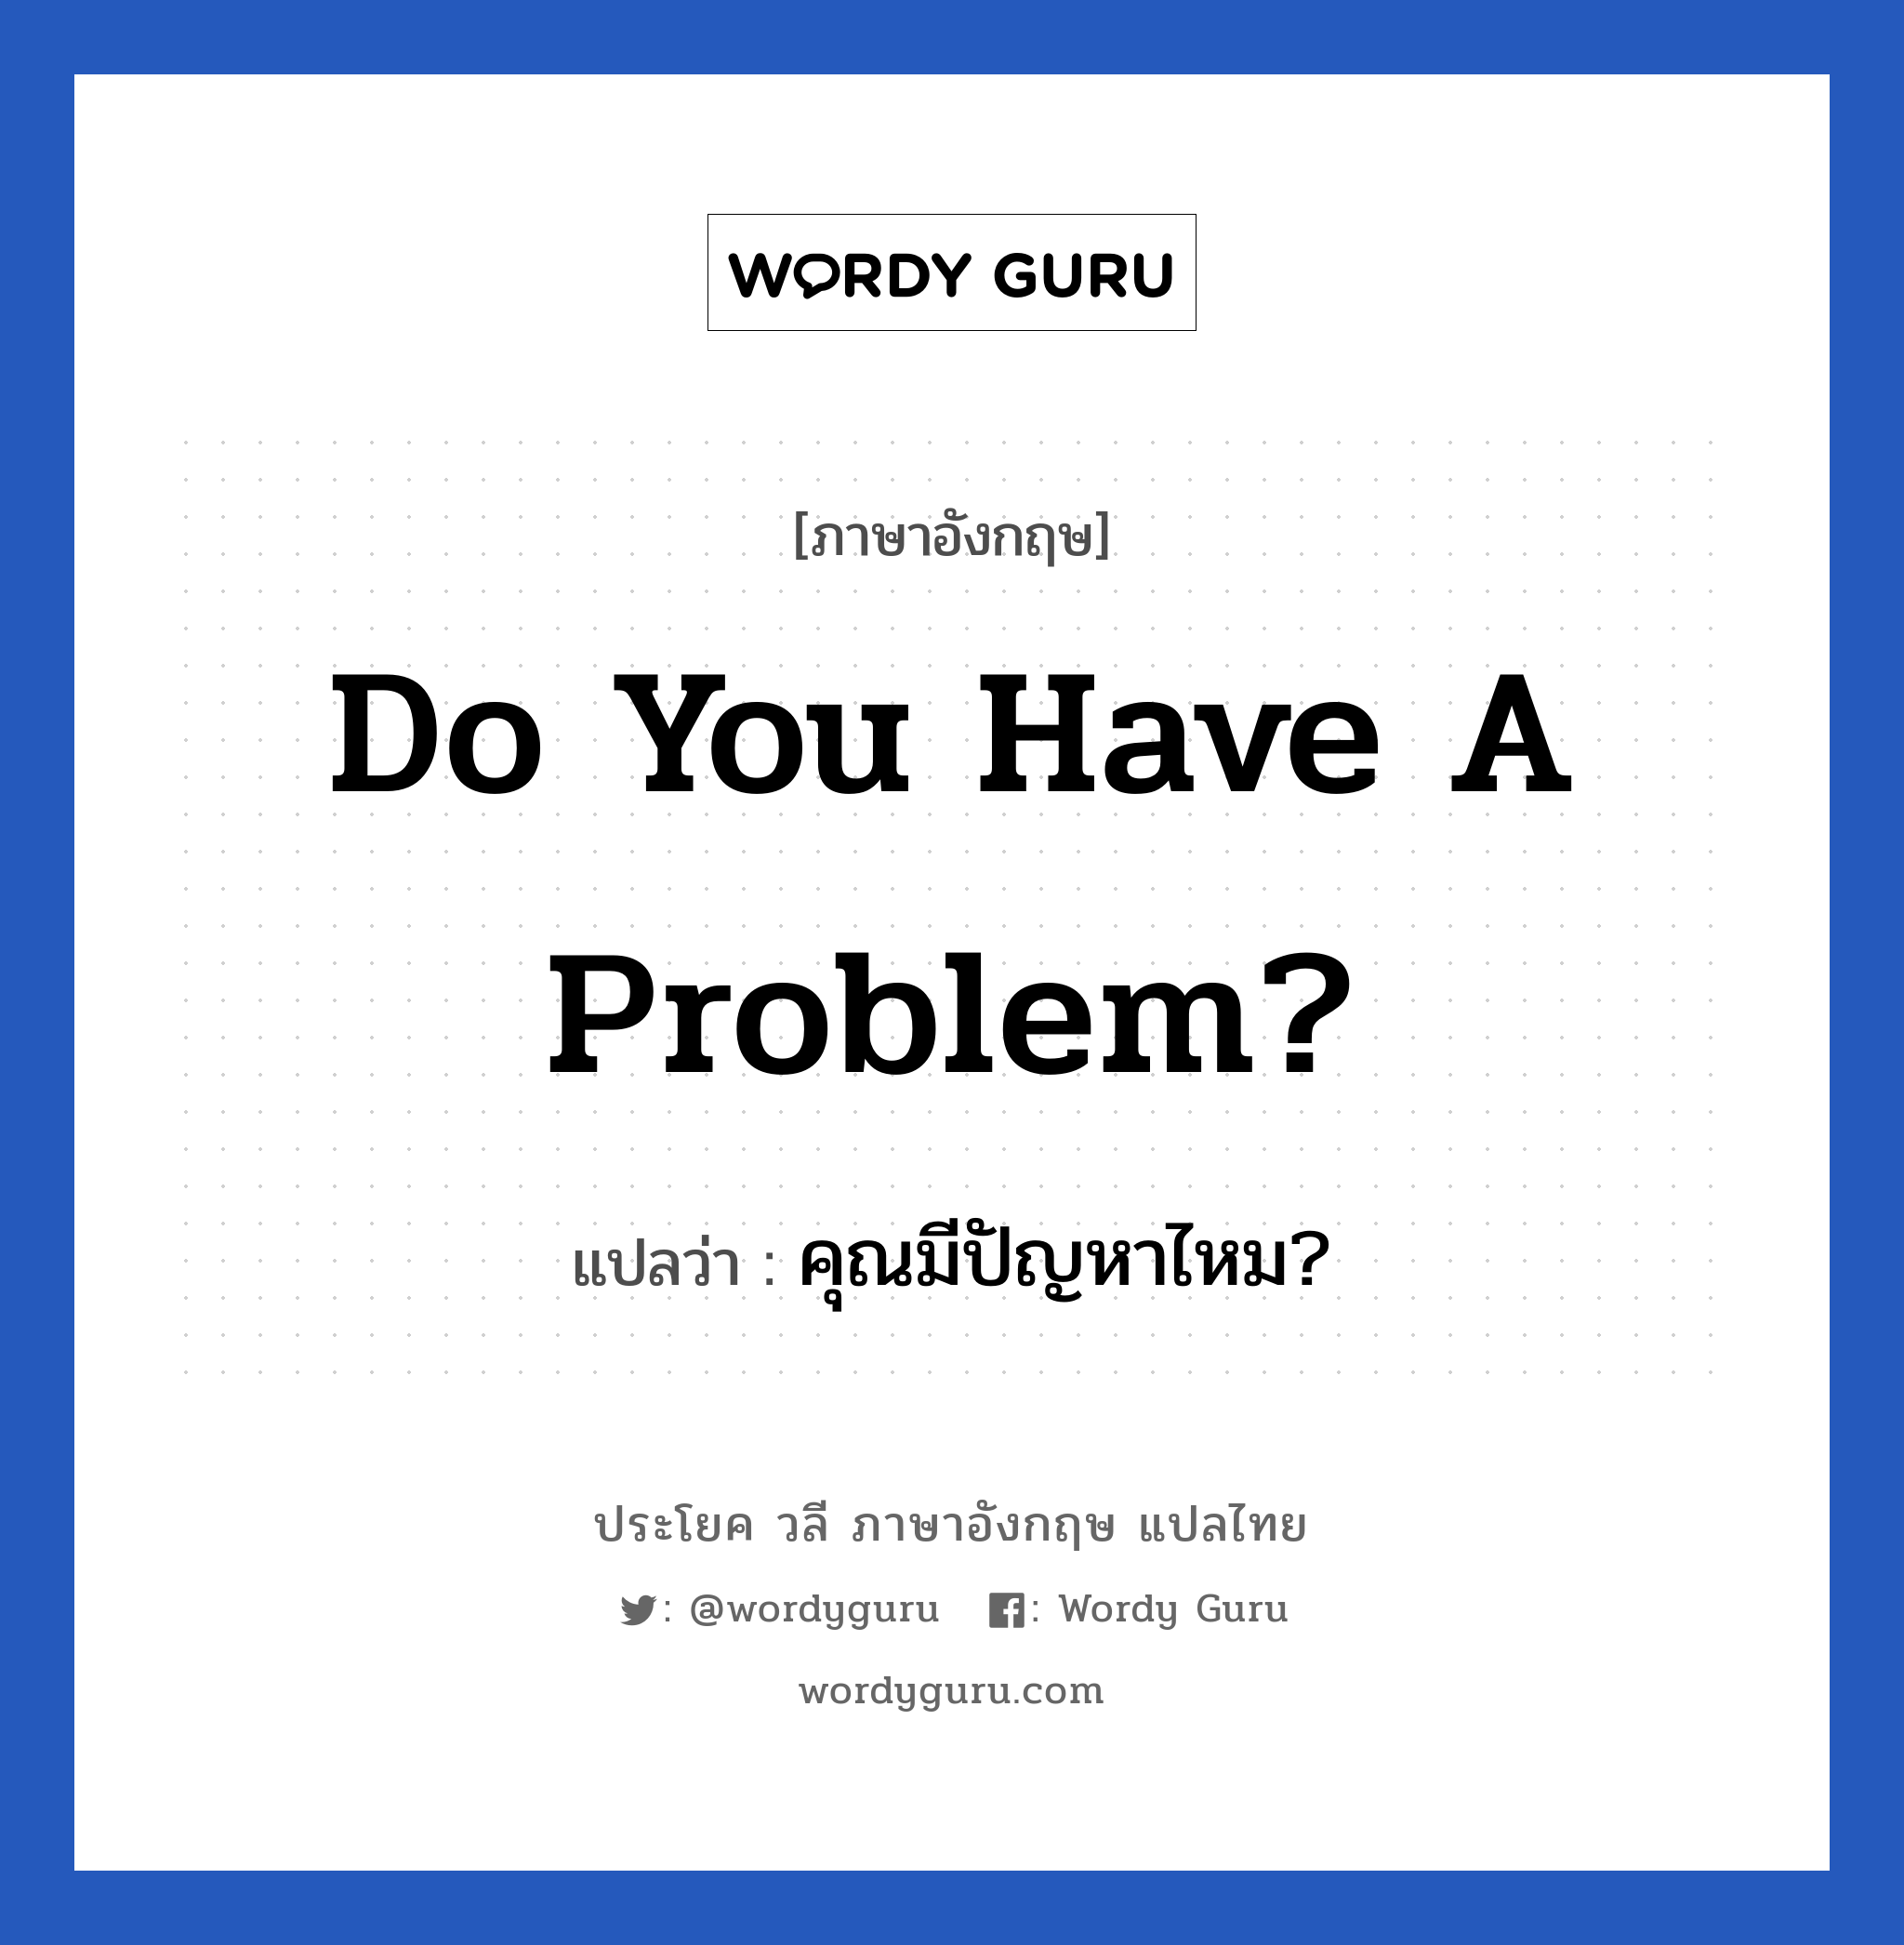 คุณมีปัญหาไหม? ภาษาอังกฤษ?, วลีภาษาอังกฤษ คุณมีปัญหาไหม? แปลว่า Do you have a problem?